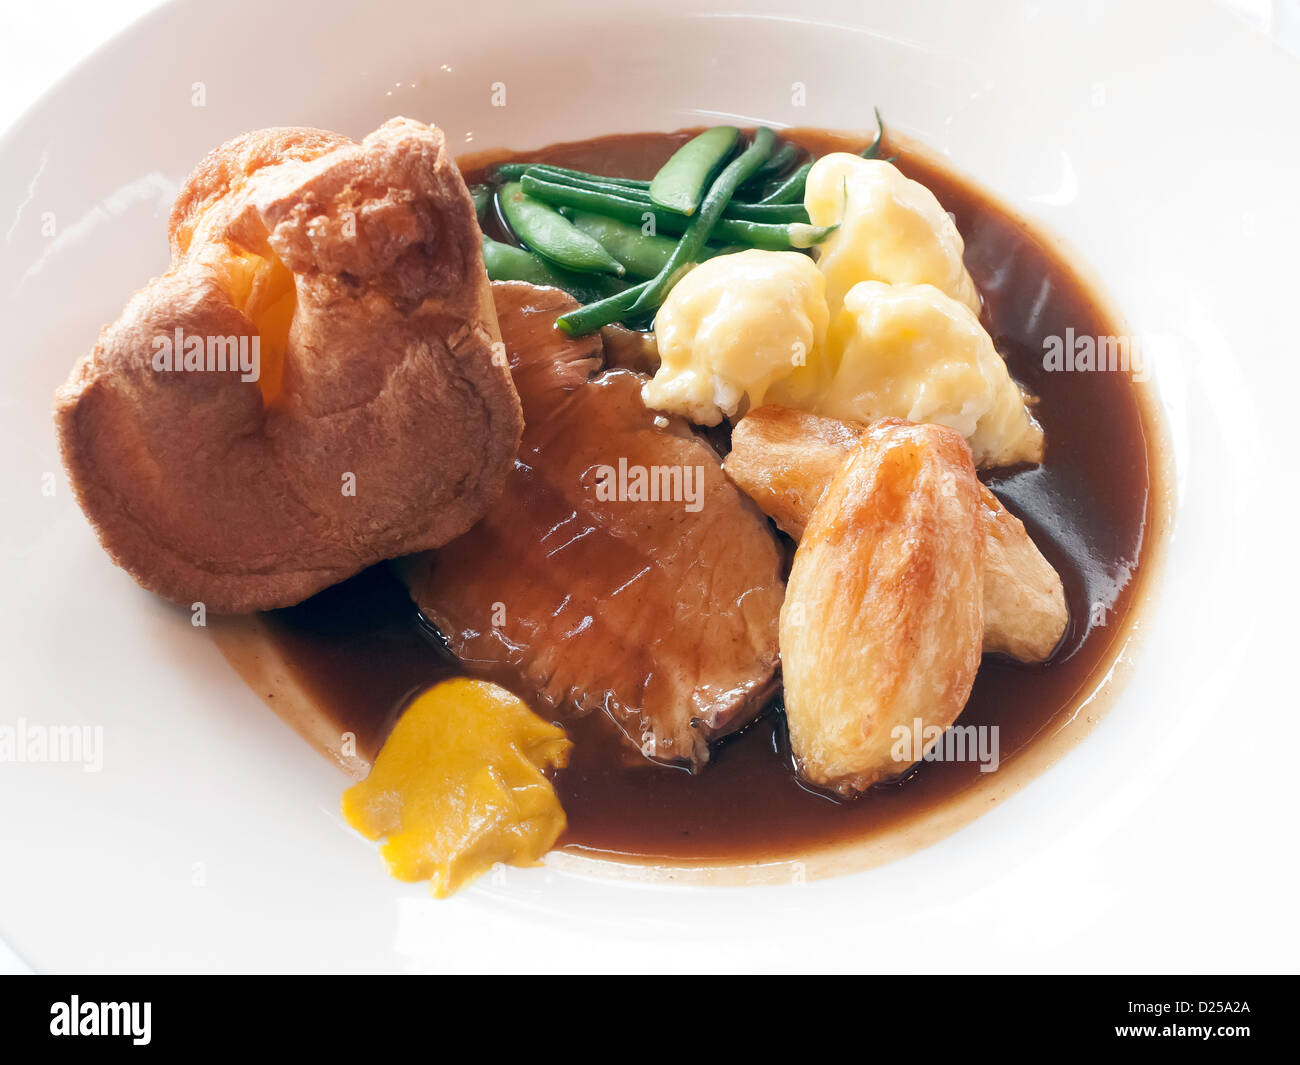 Sonntag Mittagessen Englisch Landhotel Hauptgericht Roast Beef Yorkshire Pudding Gemüse Sauce und Senf Stockfoto